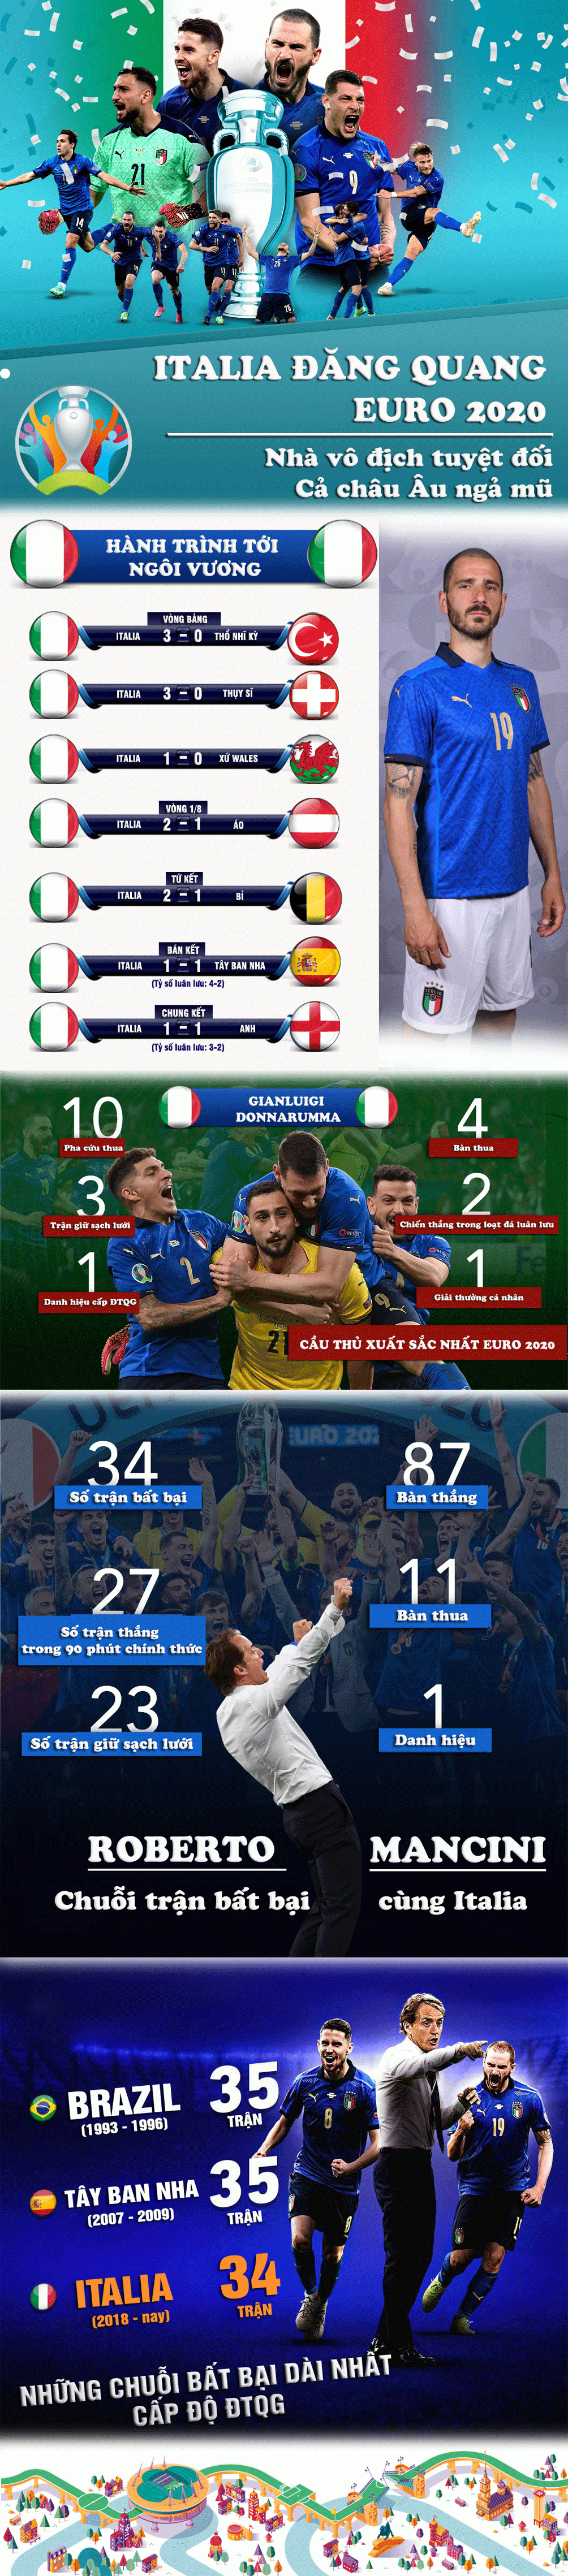 ĐT Italia đăng quang EURO 2020: Nhà vô địch tuyệt đối, cả châu Âu ngả mũ - 1